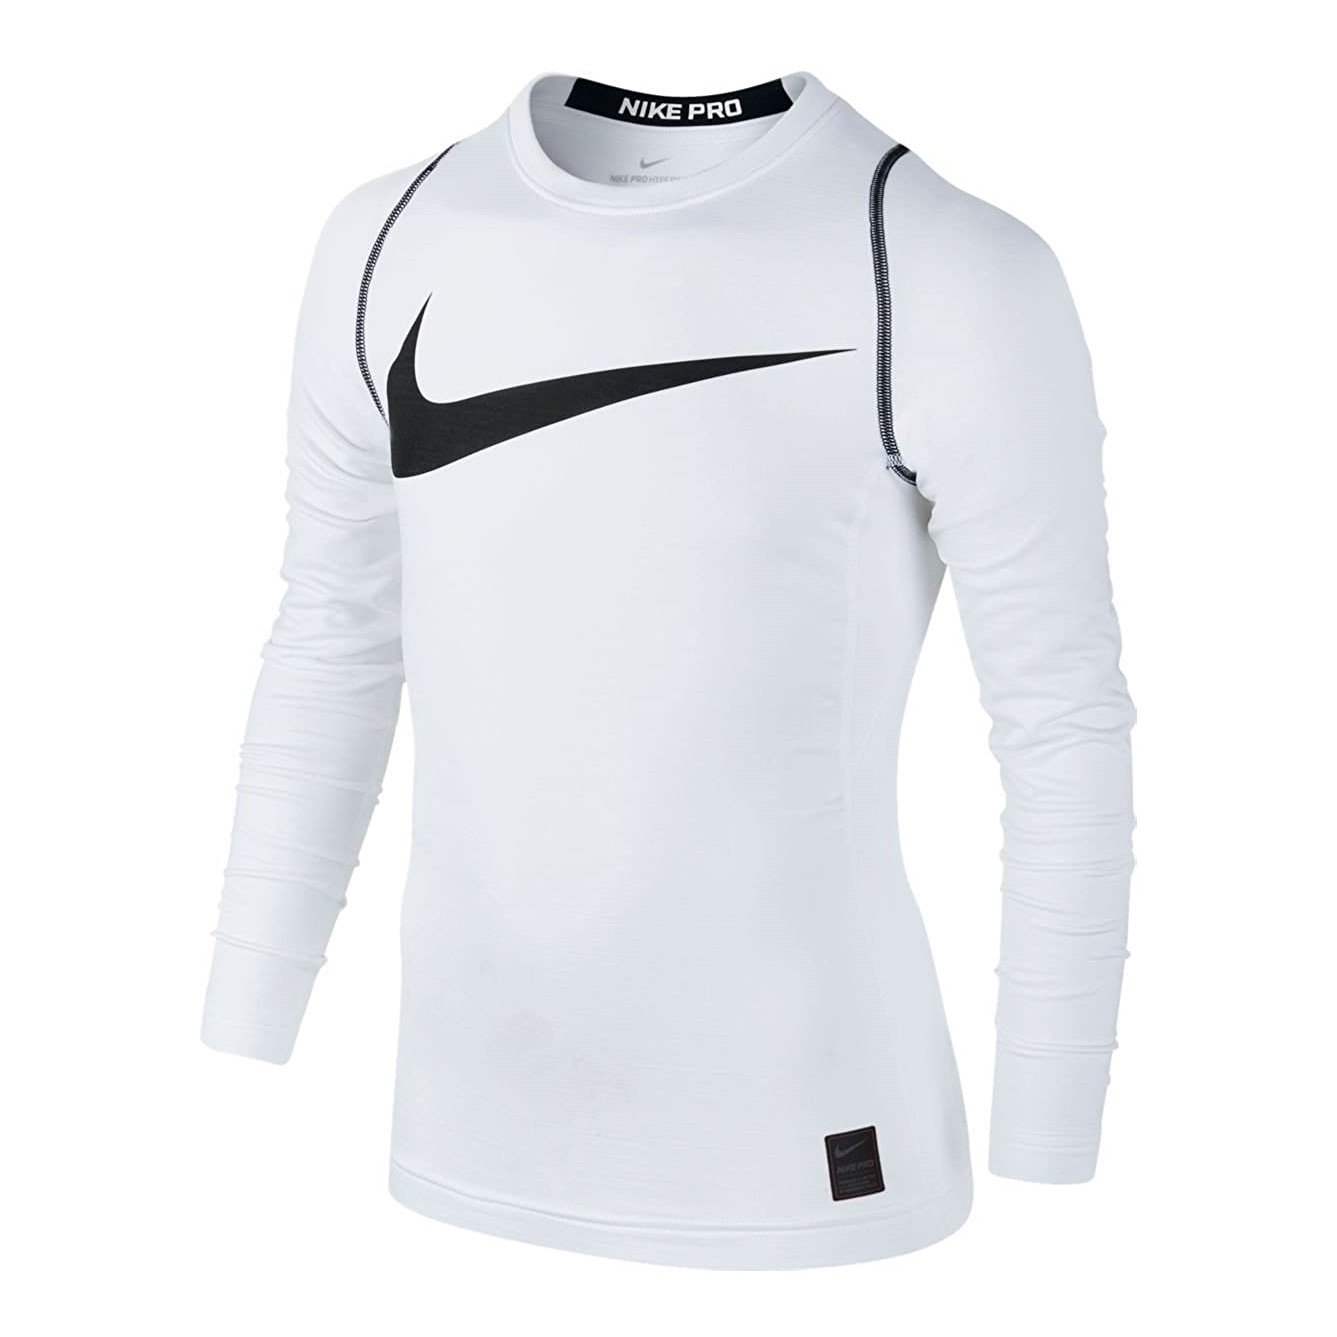 Educación Derechos de autor costo Nike Pro Hyperwarm Boys Long Sleeve Shirt (white)